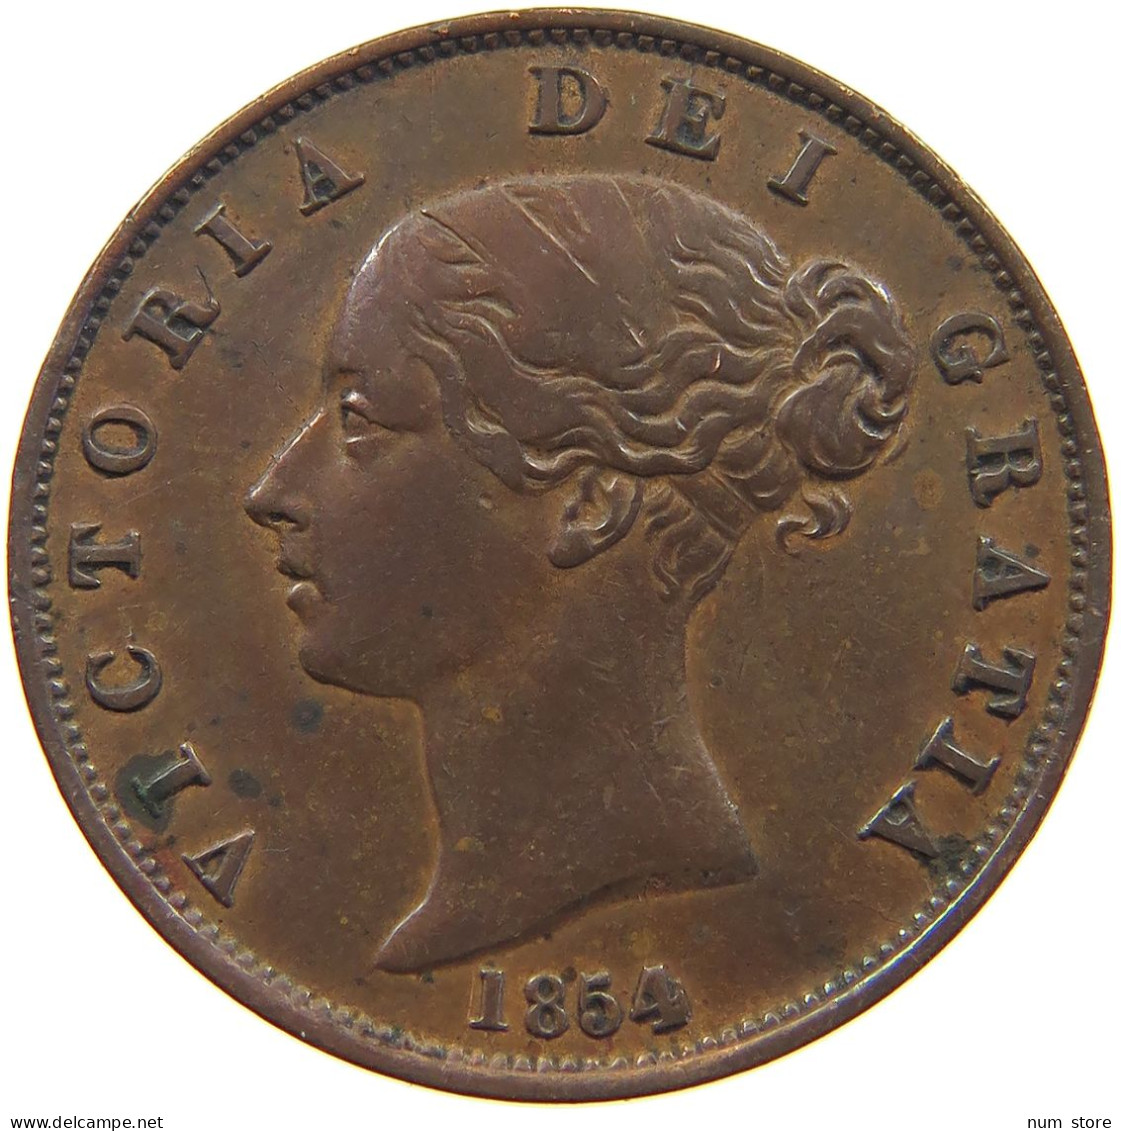 GREAT BRITAIN HALF PENNY 1854 Victoria 1837-1901 #t001 0337 - C. 1/2 Penny